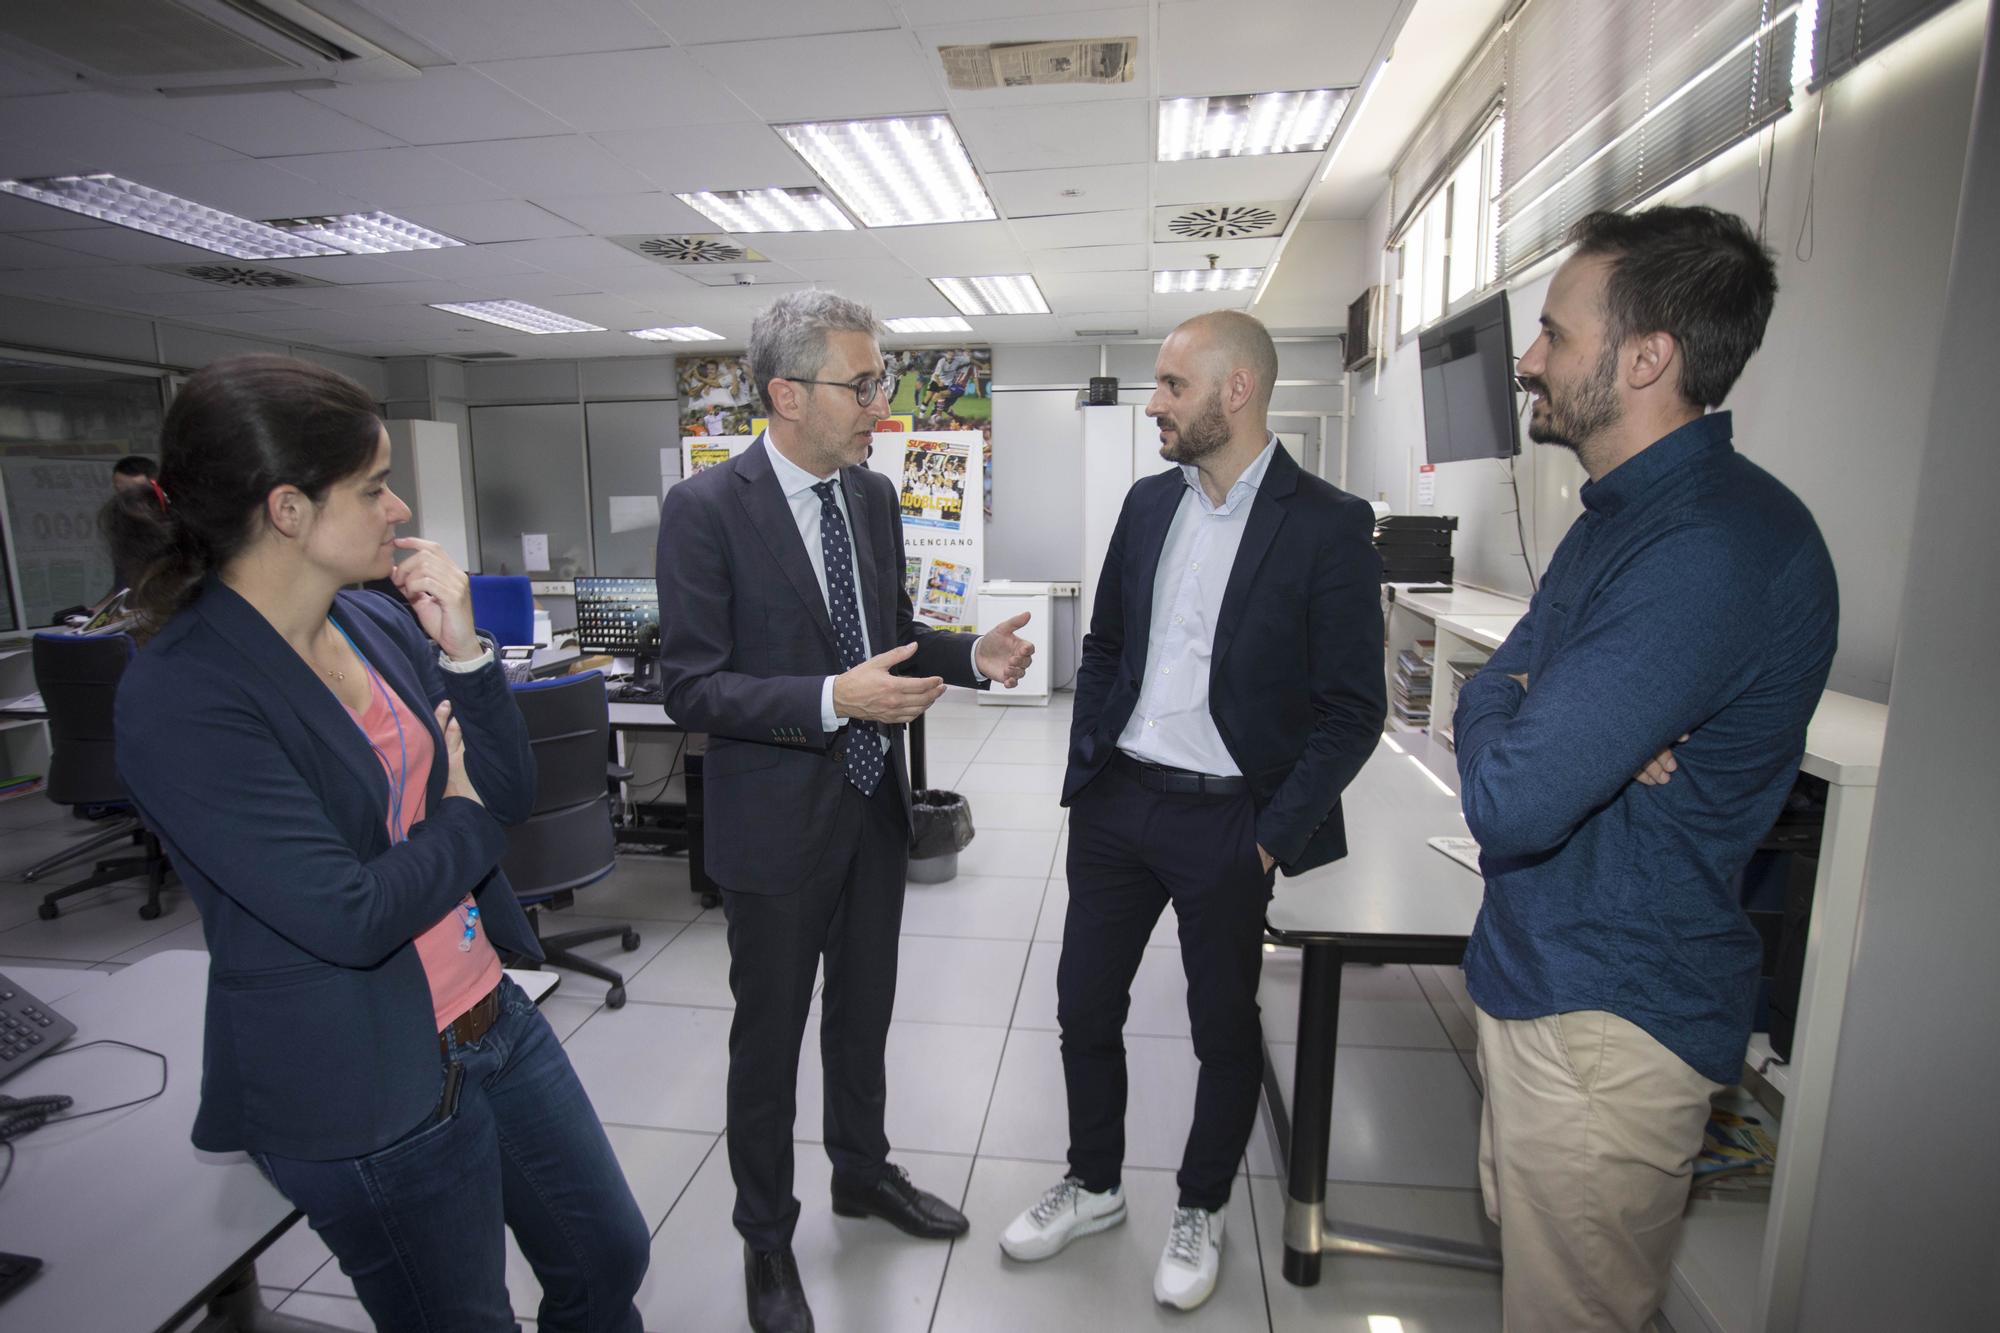 La visita del conseller Arcadi España a Levante-EMV y Superdeporte, en imágenes